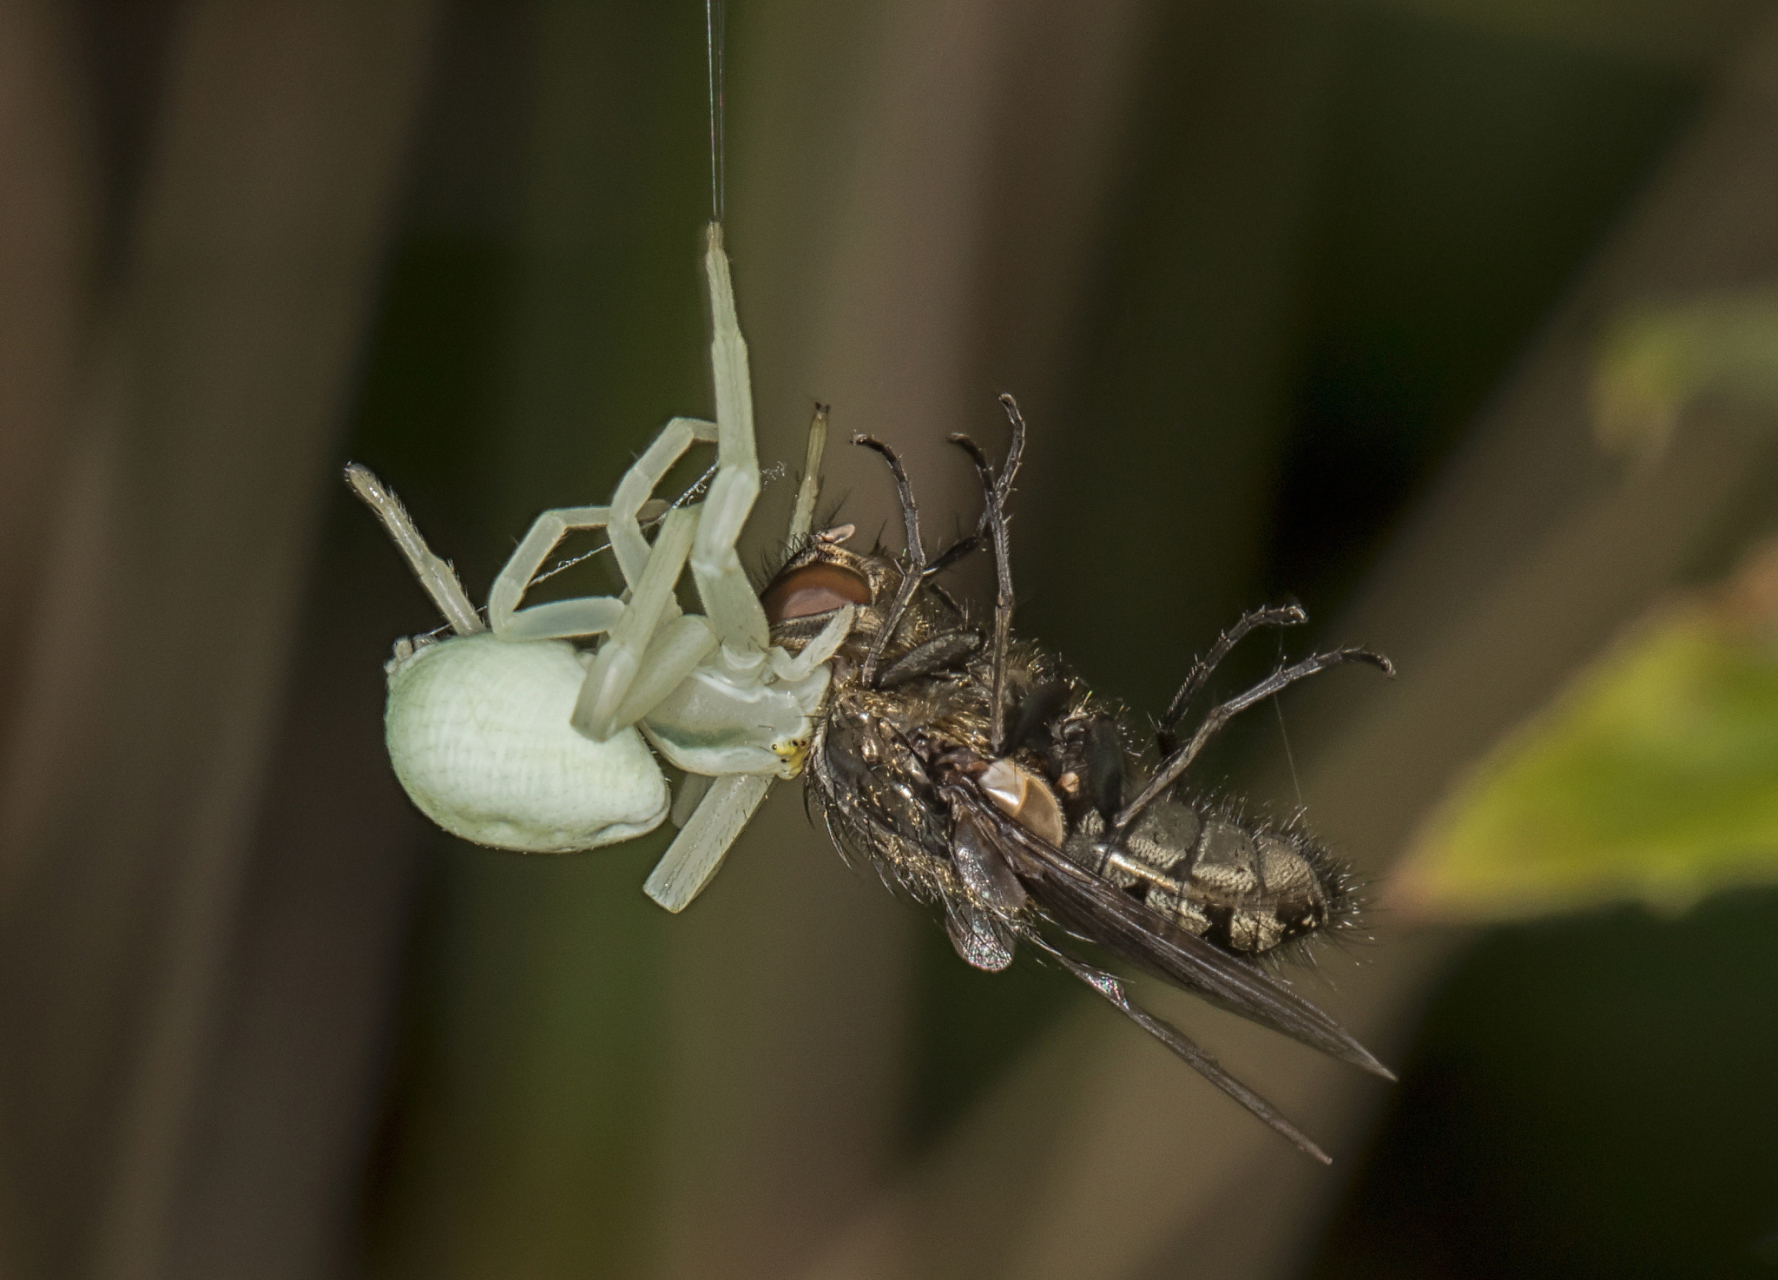 蜘蛛,自然界的顶级捕食者!它们不仅捕捉蚊子,蚂蚁等昆虫为食